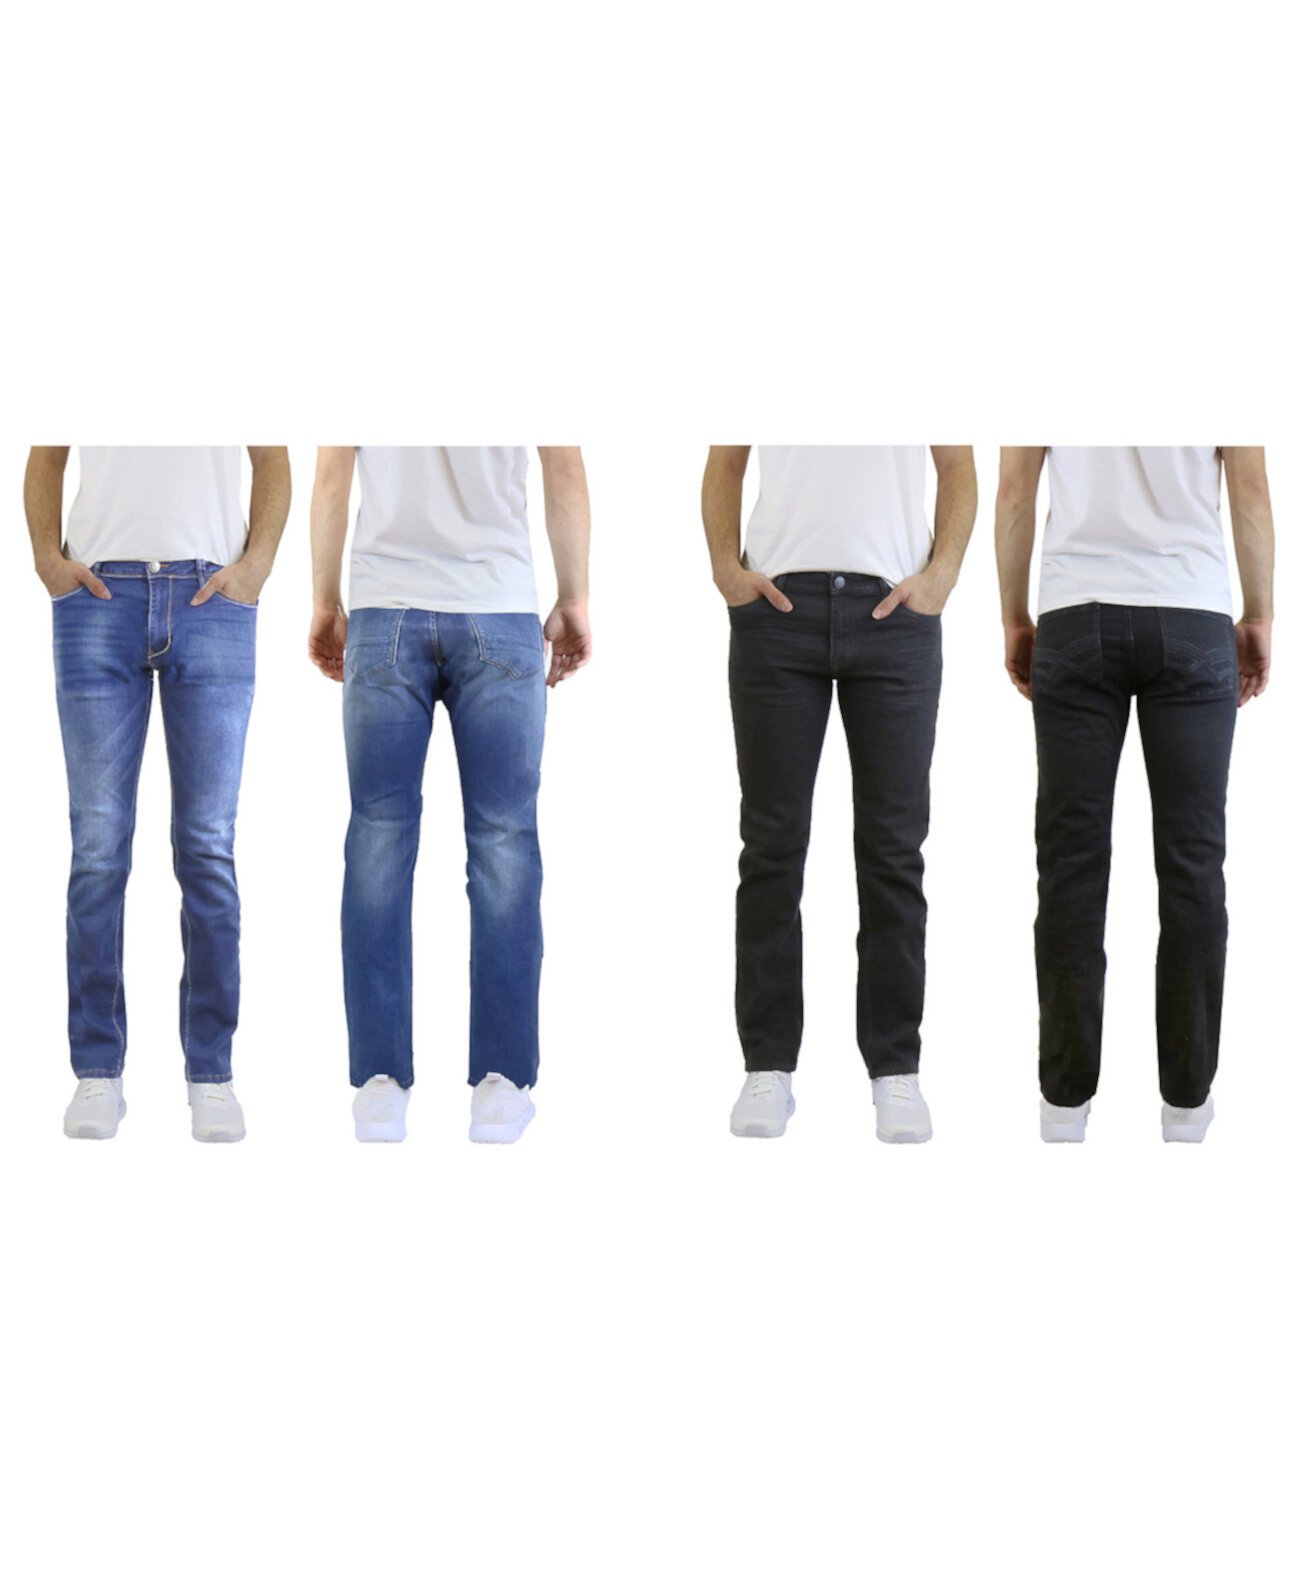 Мужские прямые джинсы с 2 пакетами и стрейч Galaxy By Harvic